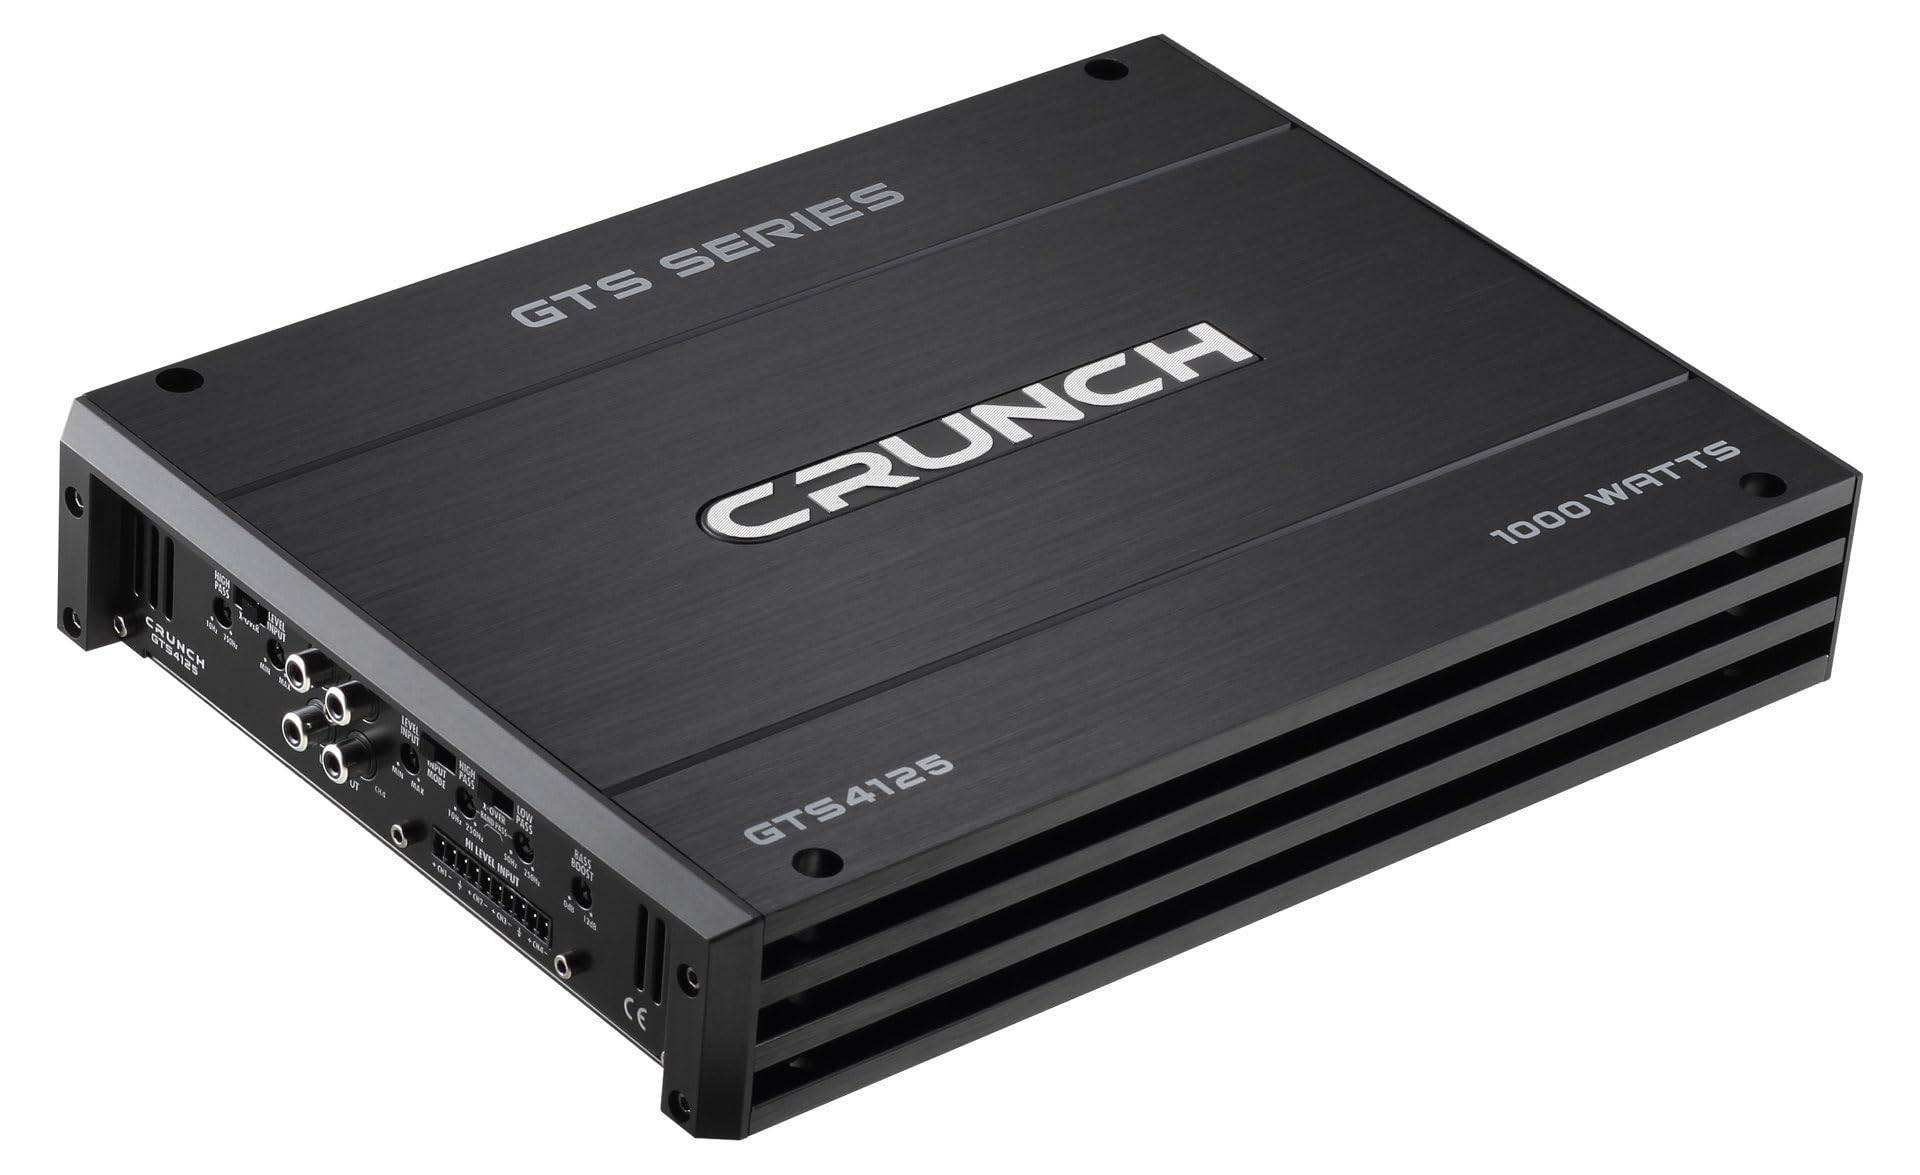 Crunch GTS4125 4-Kanal Endstufe 1000W Passend für (Auto-Marke): Universal von Crunch